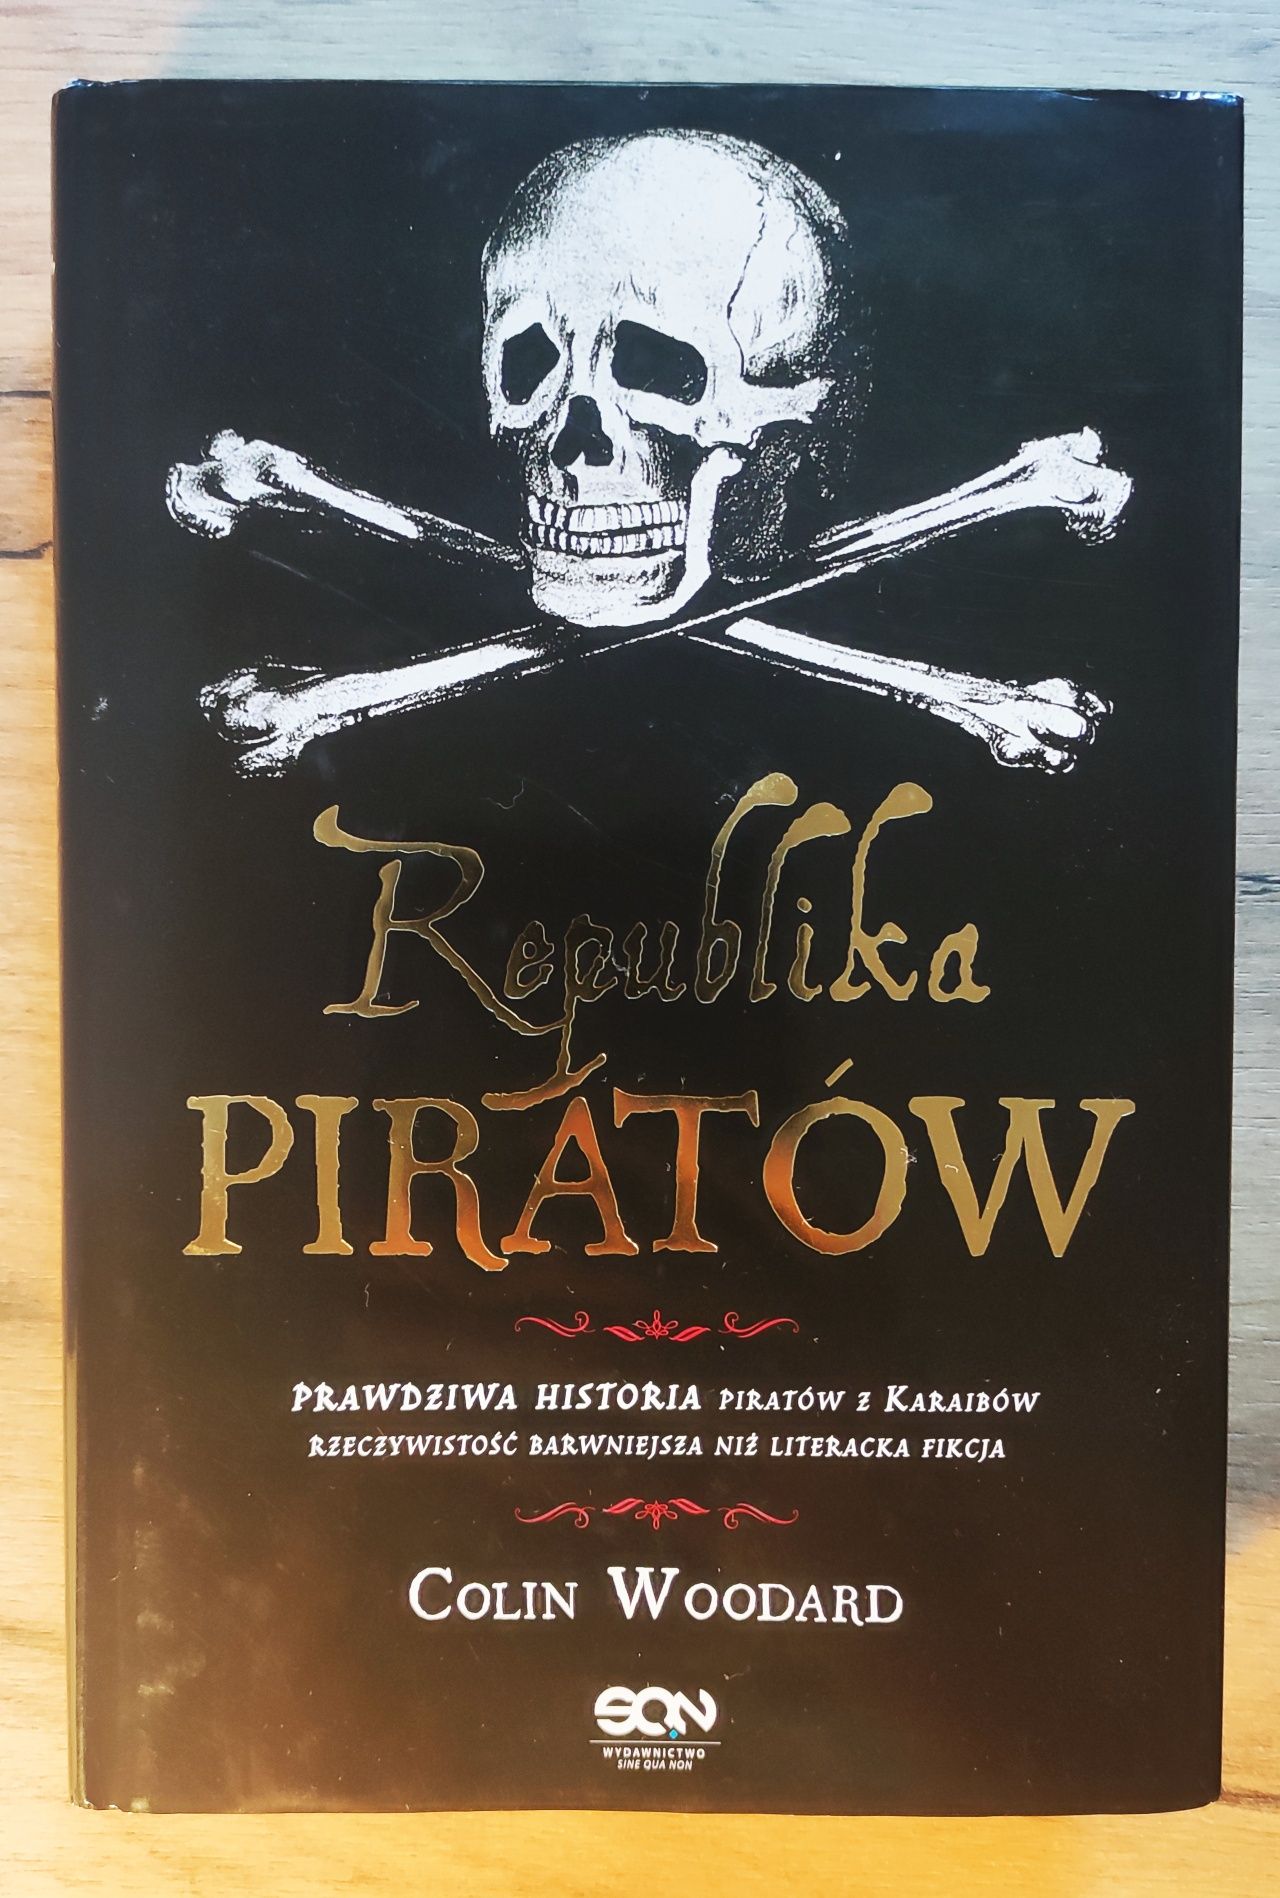 Colin Woodard - "Republika Piratów" znakomicie zachowany egzemplarz